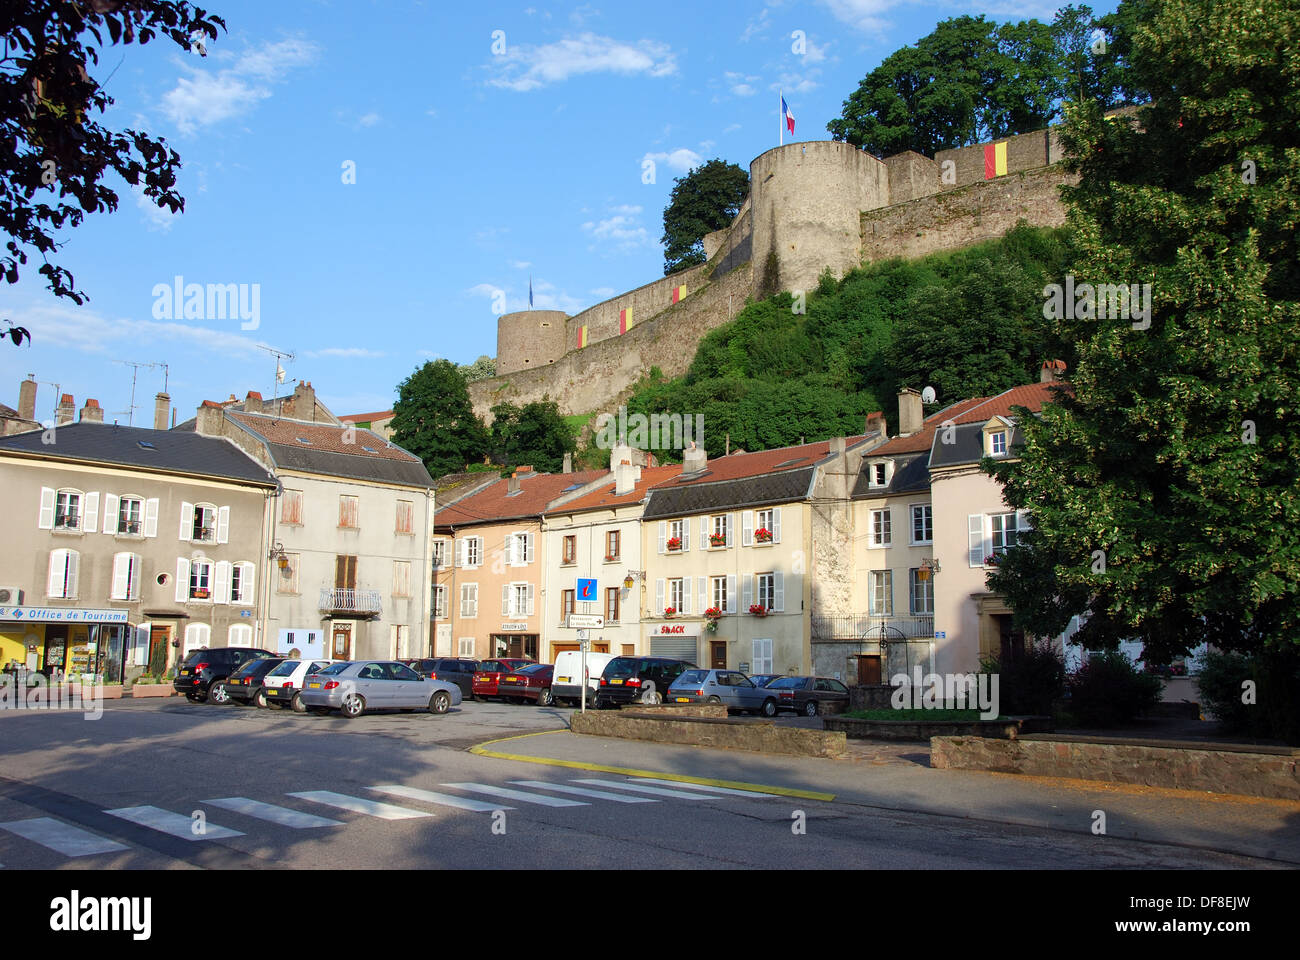 Chateau des Ducs de Lorraine, Sierk-les-Bains, France Stock Photo - Alamy